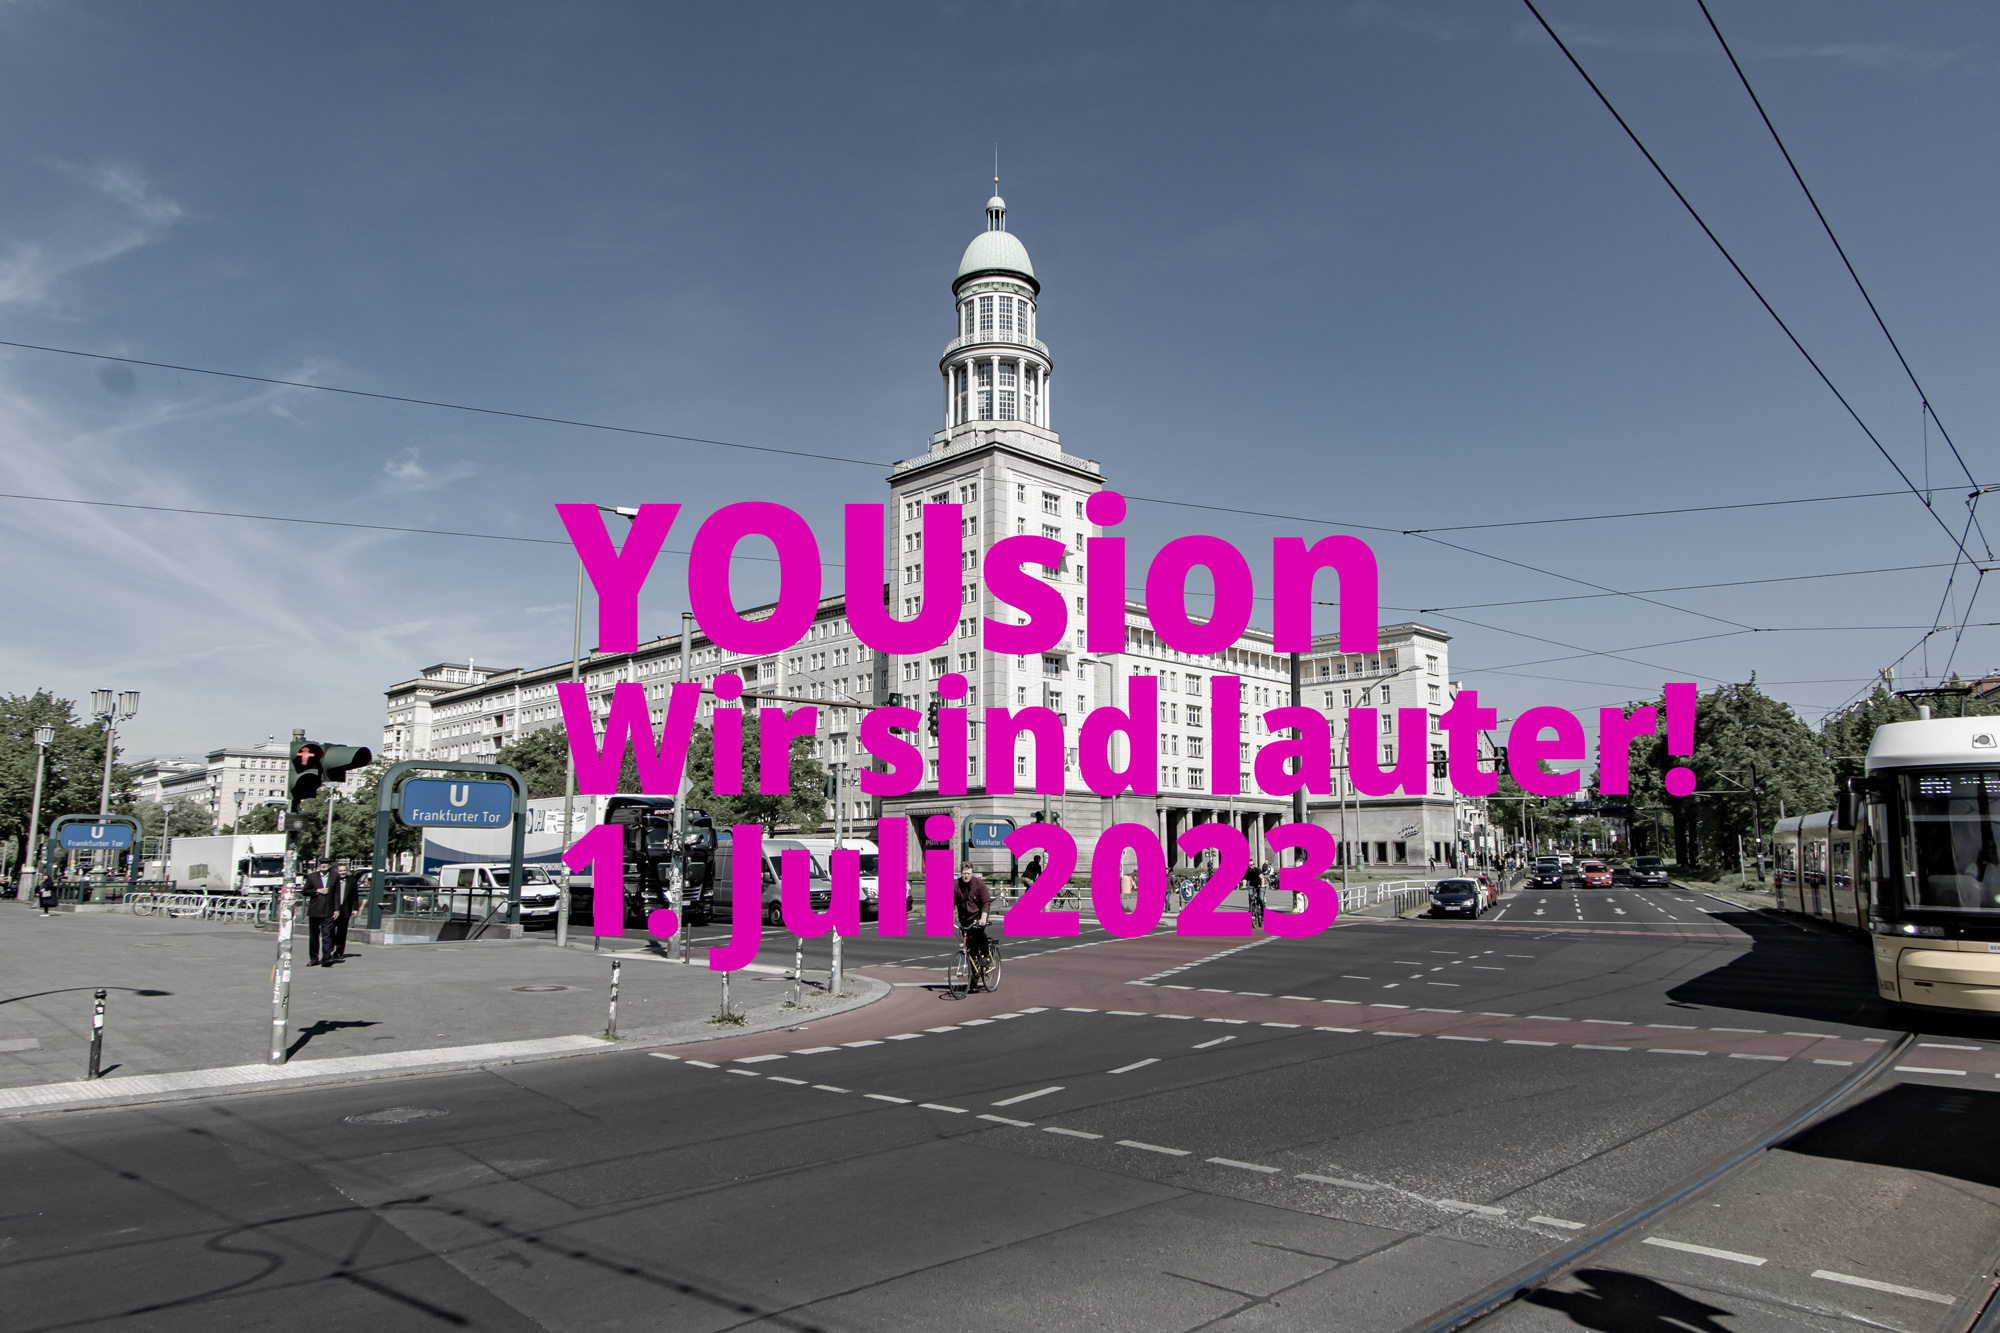 YOUsion – Wir sind lauter! Friedrichshain feiert erstes großes Jugend- und Familienfest am Frankfurter Tor